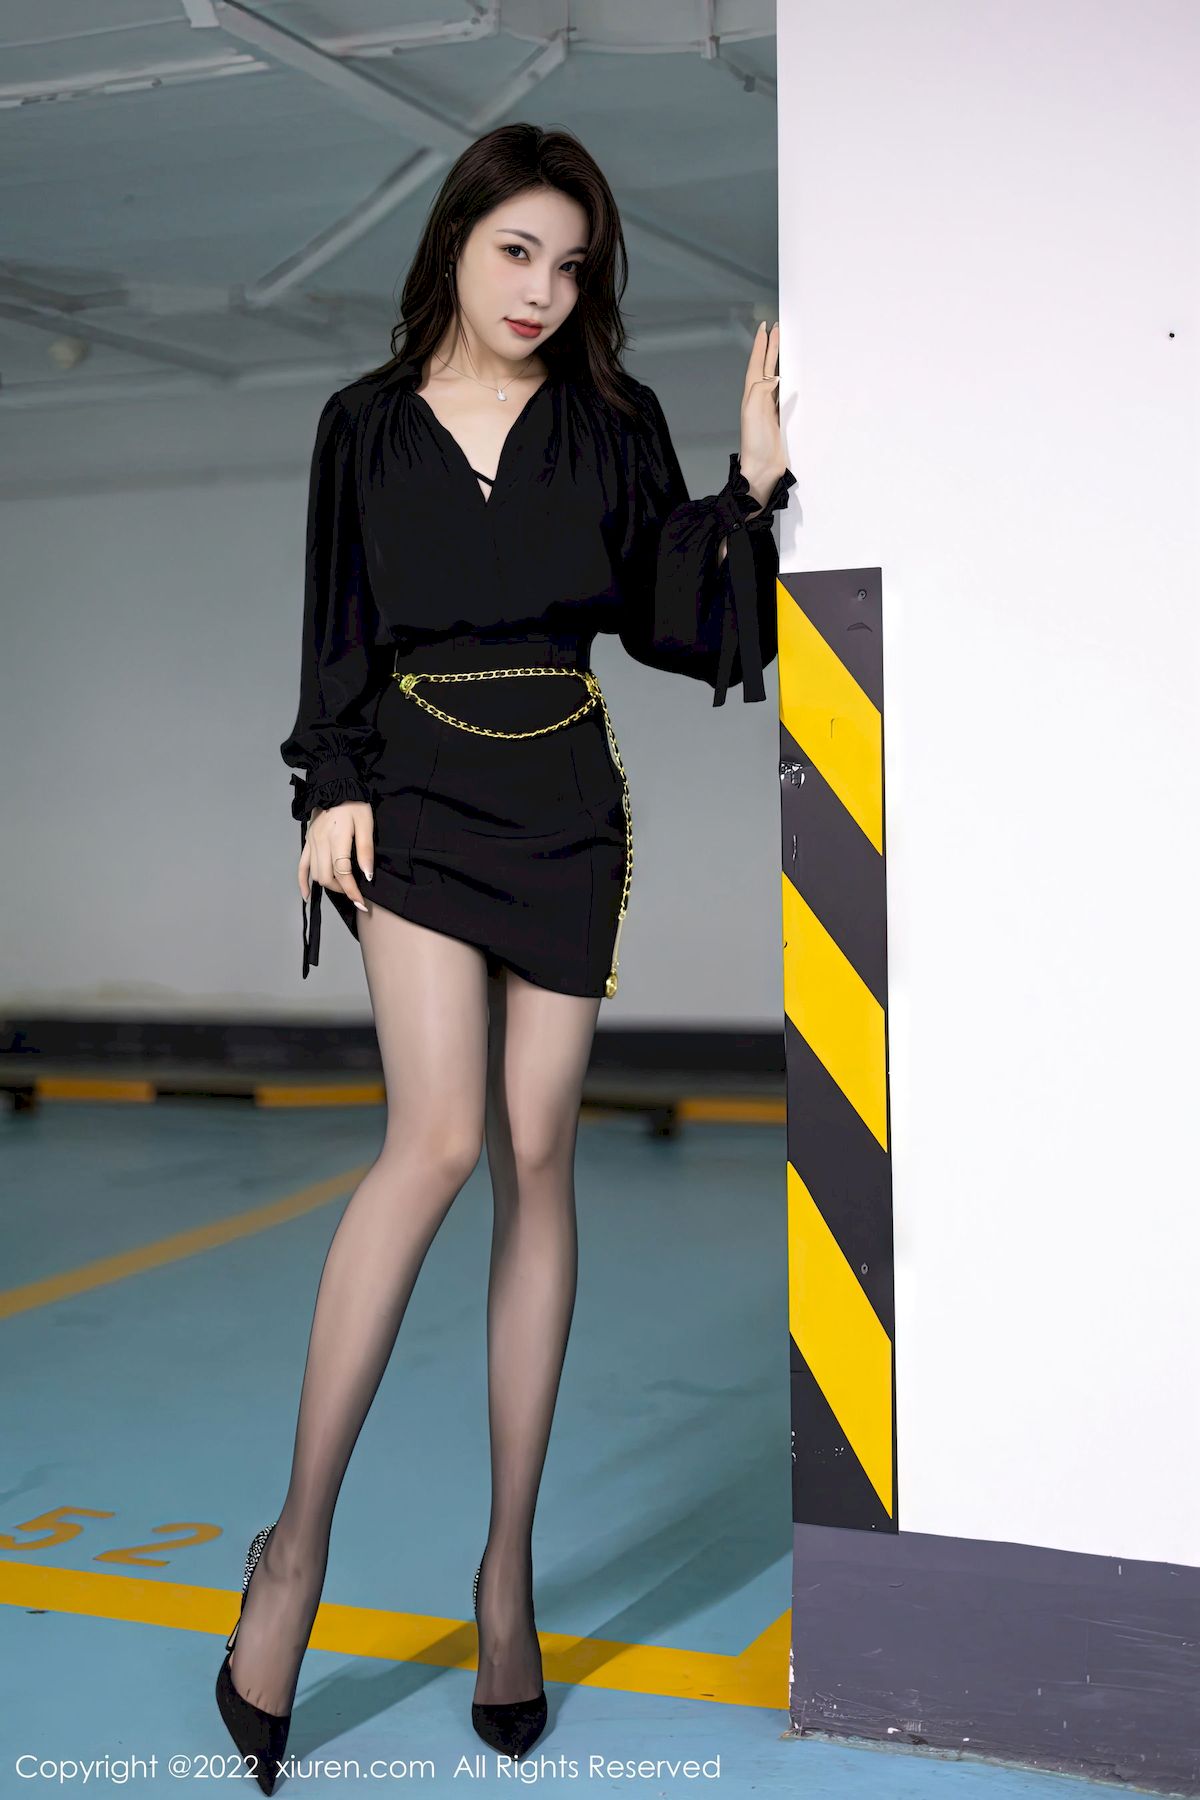 徐莉芝Booty - 黑色服饰+黑丝短裙性感写真